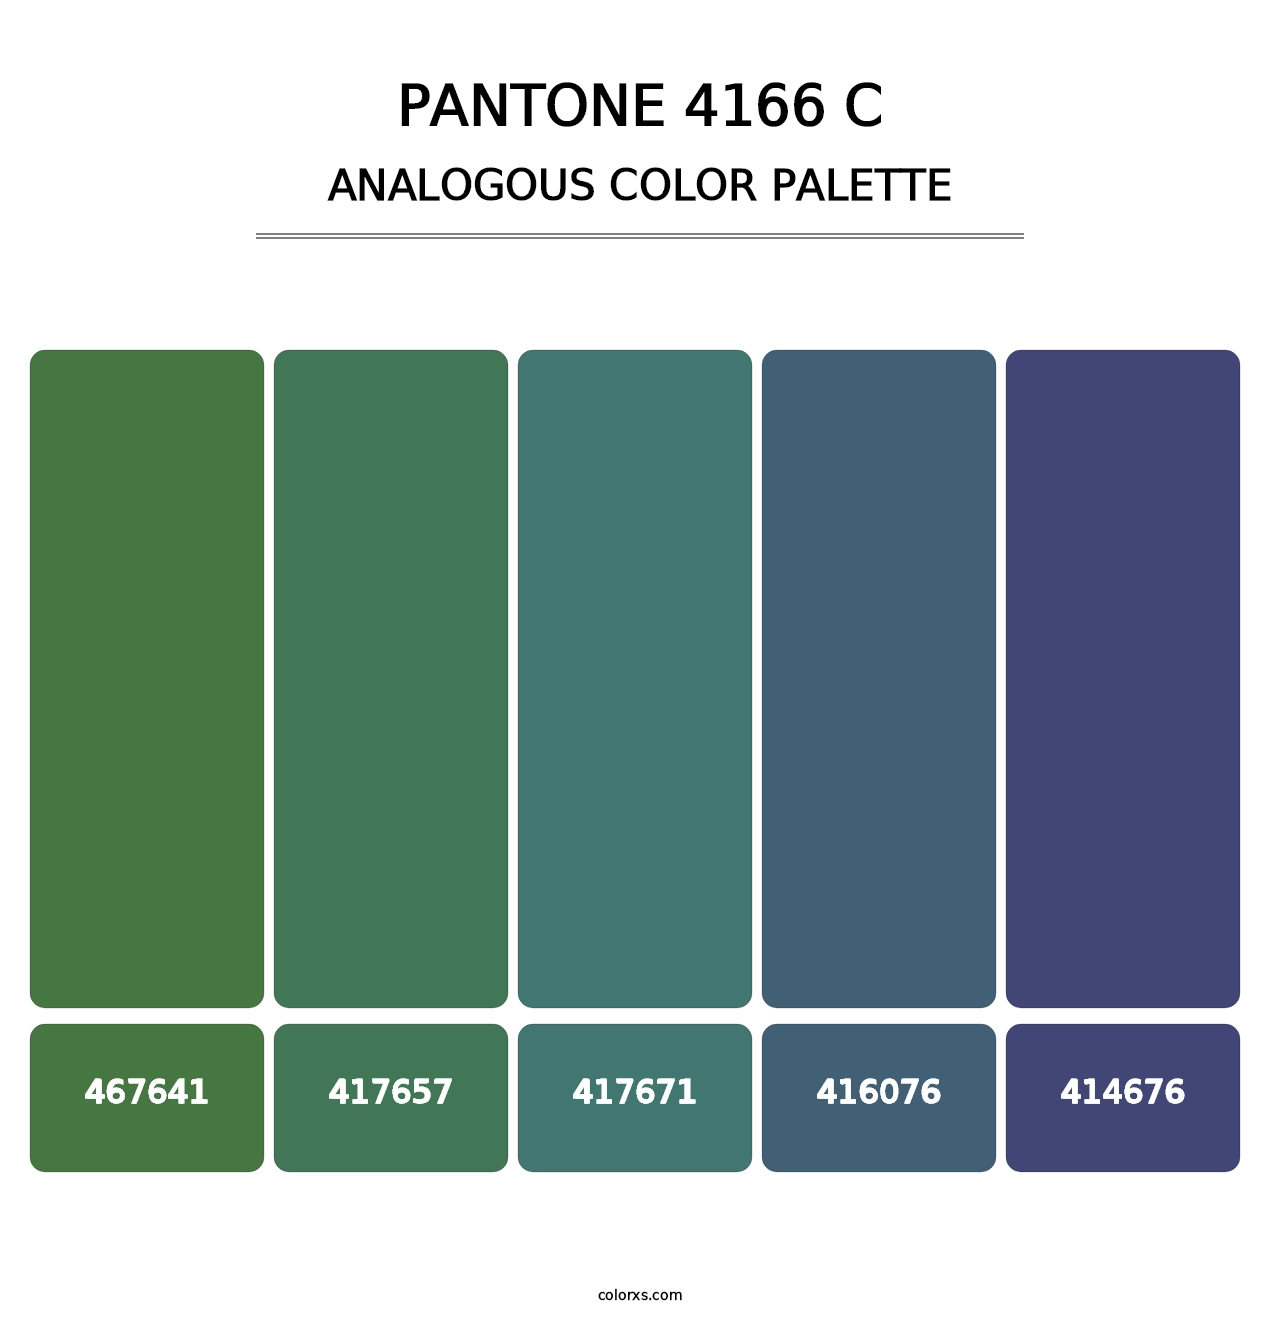 PANTONE 4166 C - Analogous Color Palette